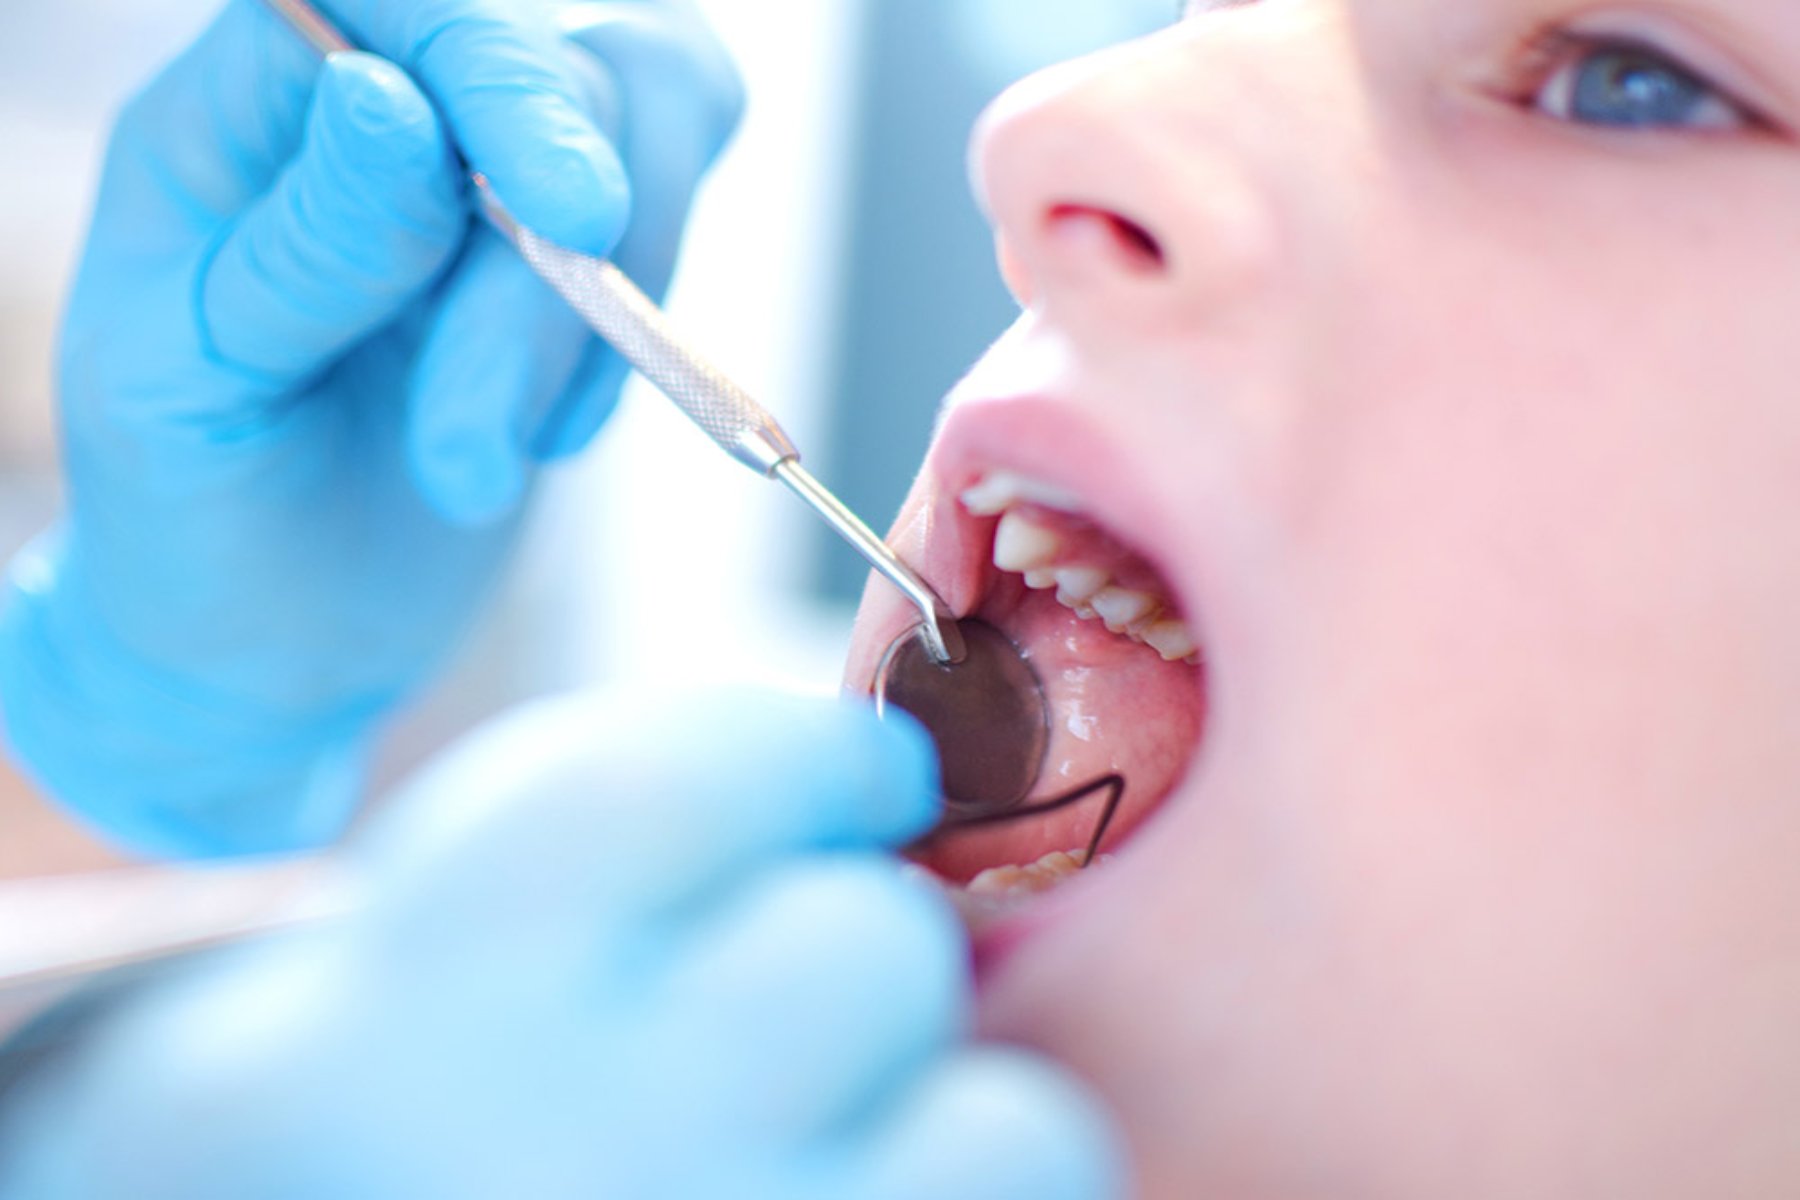 Δόντια προστασία: Προσέξτε αυτά τα πρώιμα σημάδια τερηδόνας στα παιδιά για να προστατέψετε τα δόντια τους